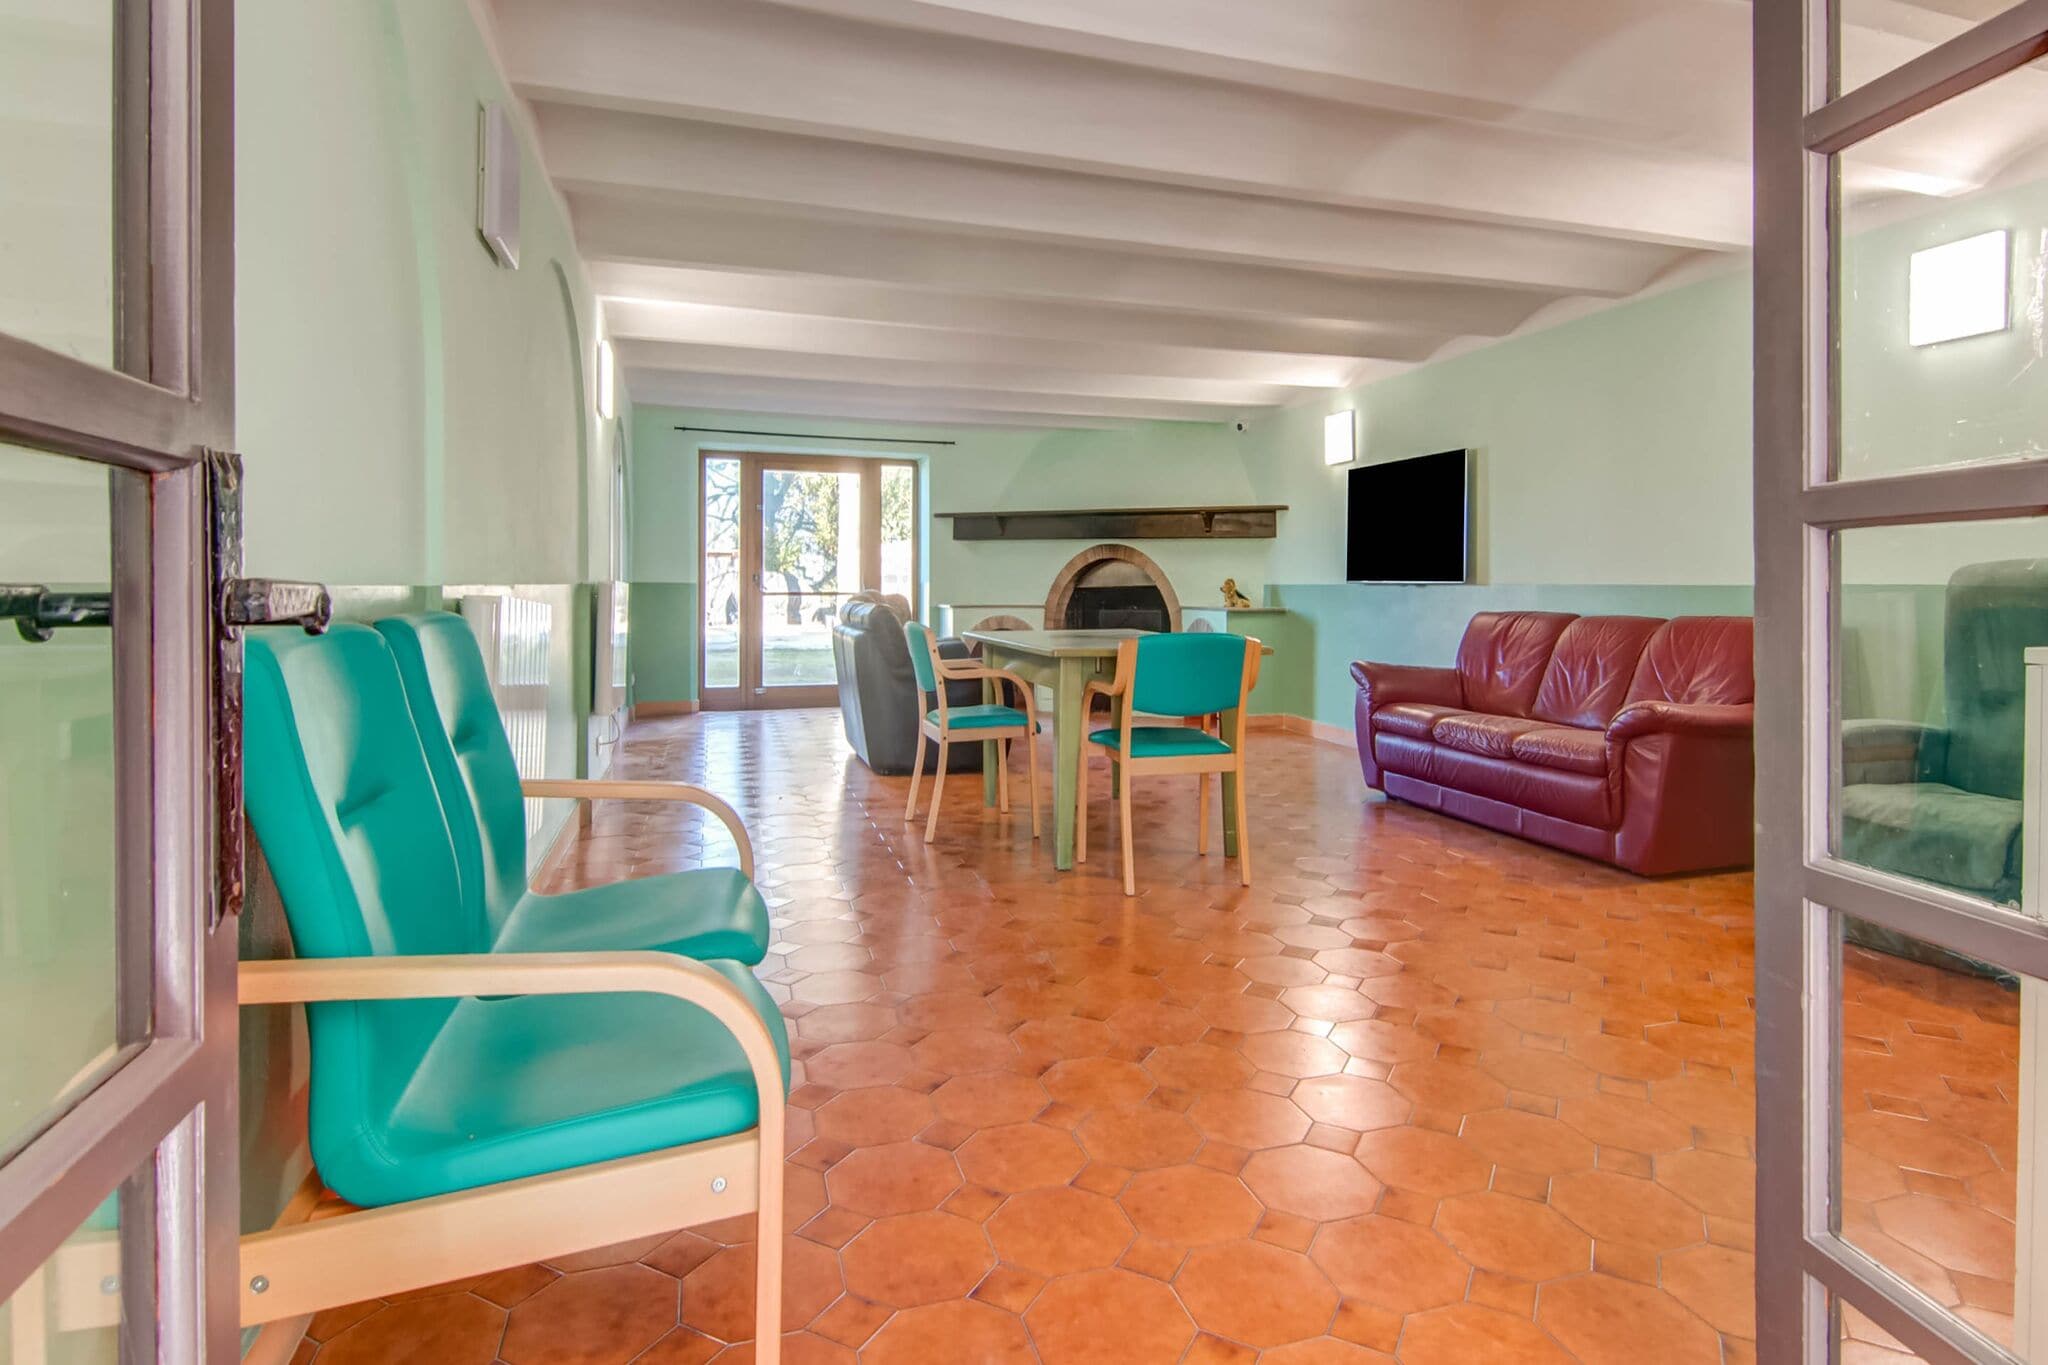 Cozy Villa in Sant'Elpidio a mare 4km from the beaches